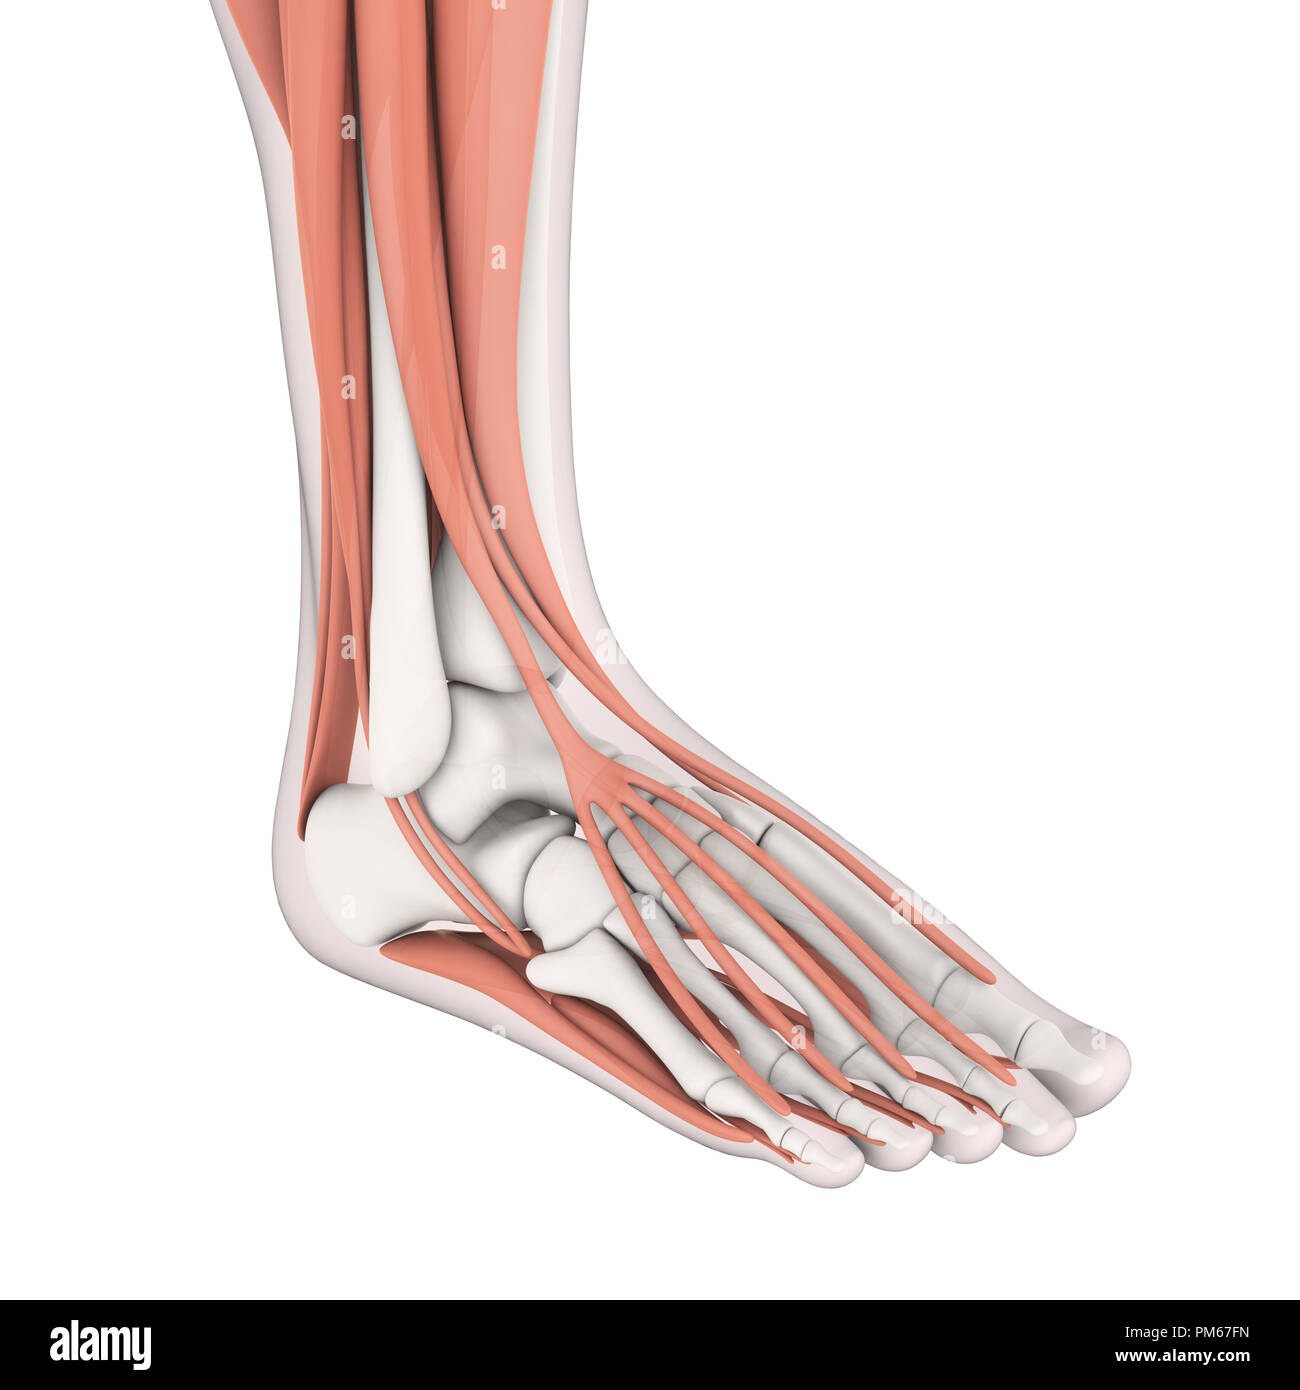 Menschlichen Fuß Muskeln Anatomie Stockfoto